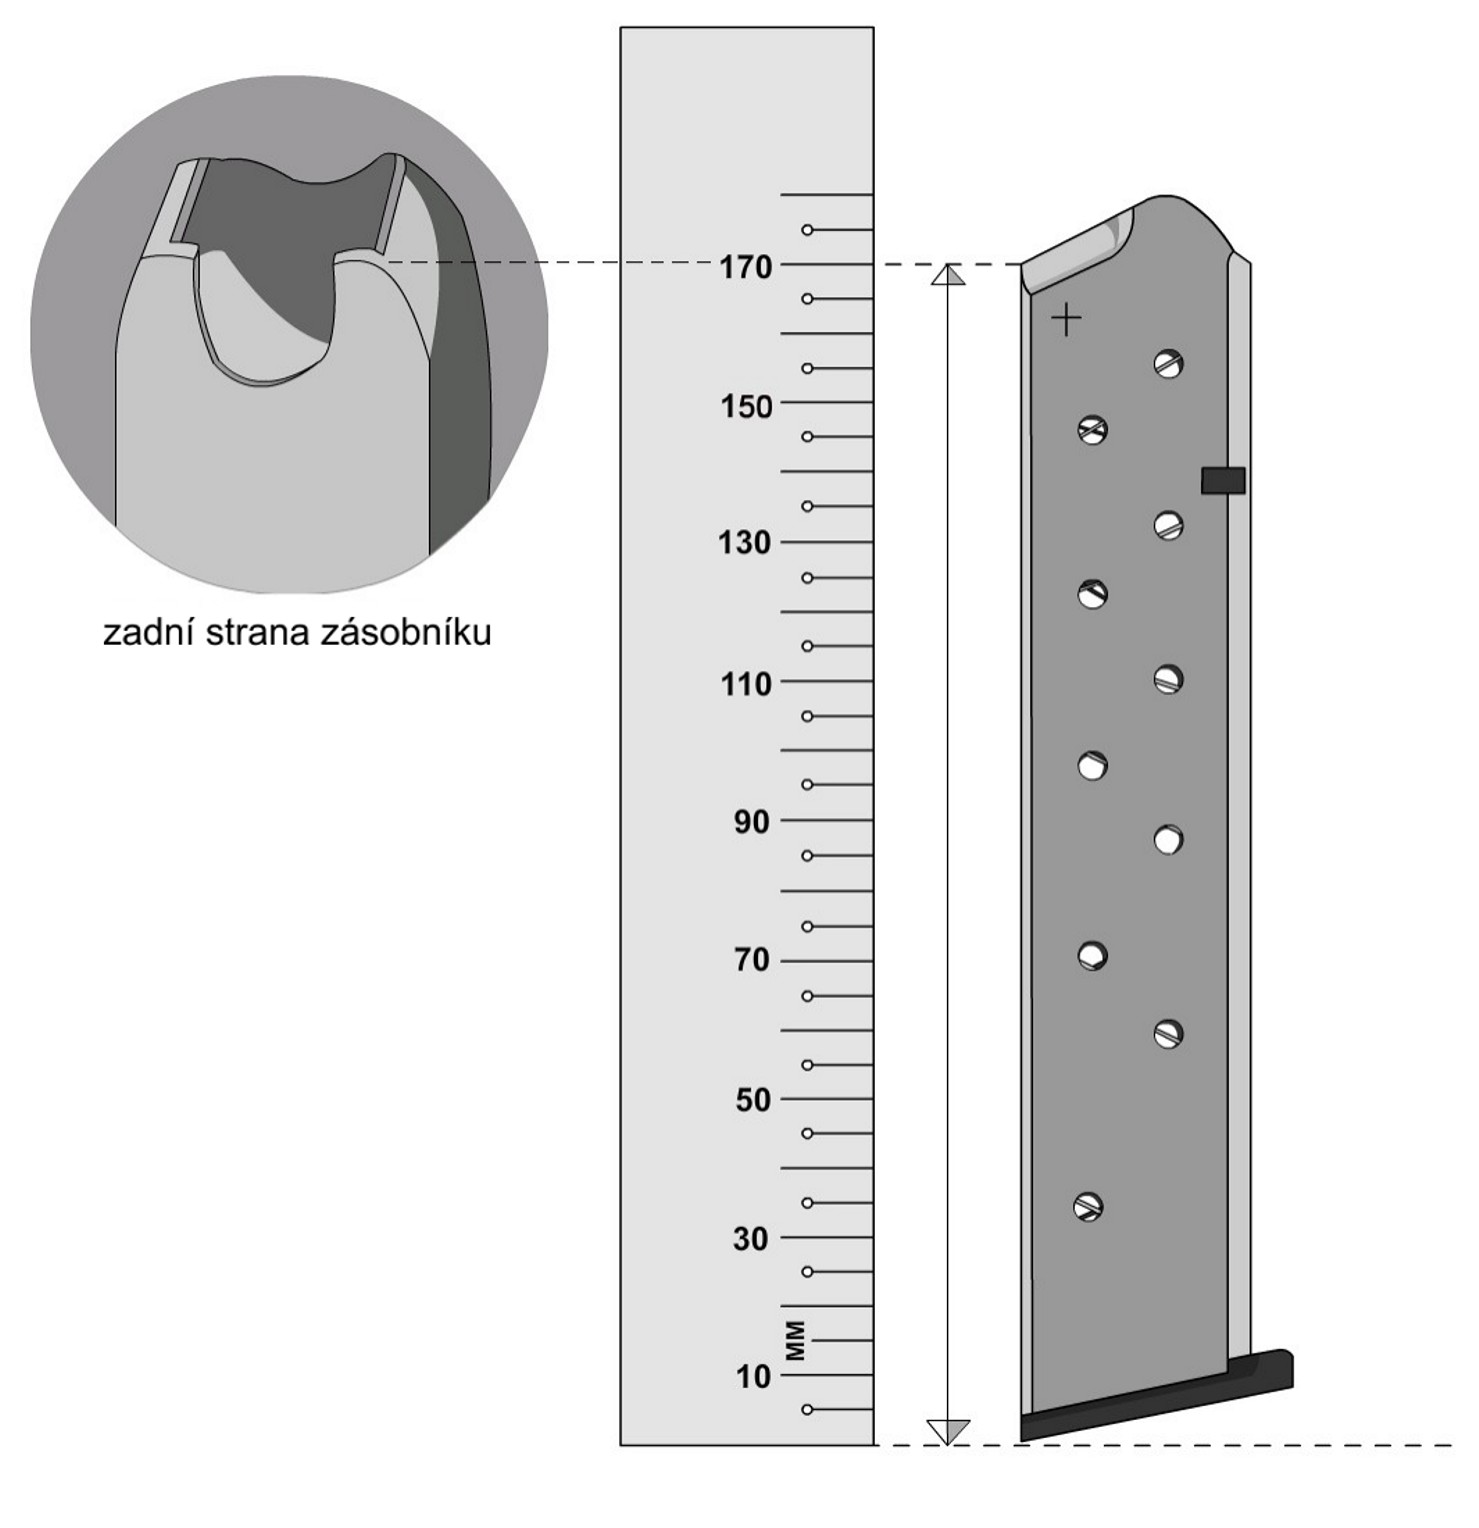 PŘÍLOHA E1: Postup měření zásobníku Měření provedeme tak, že zásobník postavíme kolmo na pevnou podložku, k zadní straně zásobníku přiložíme měřidlo, kterým změříme výšku od podložky k zadní